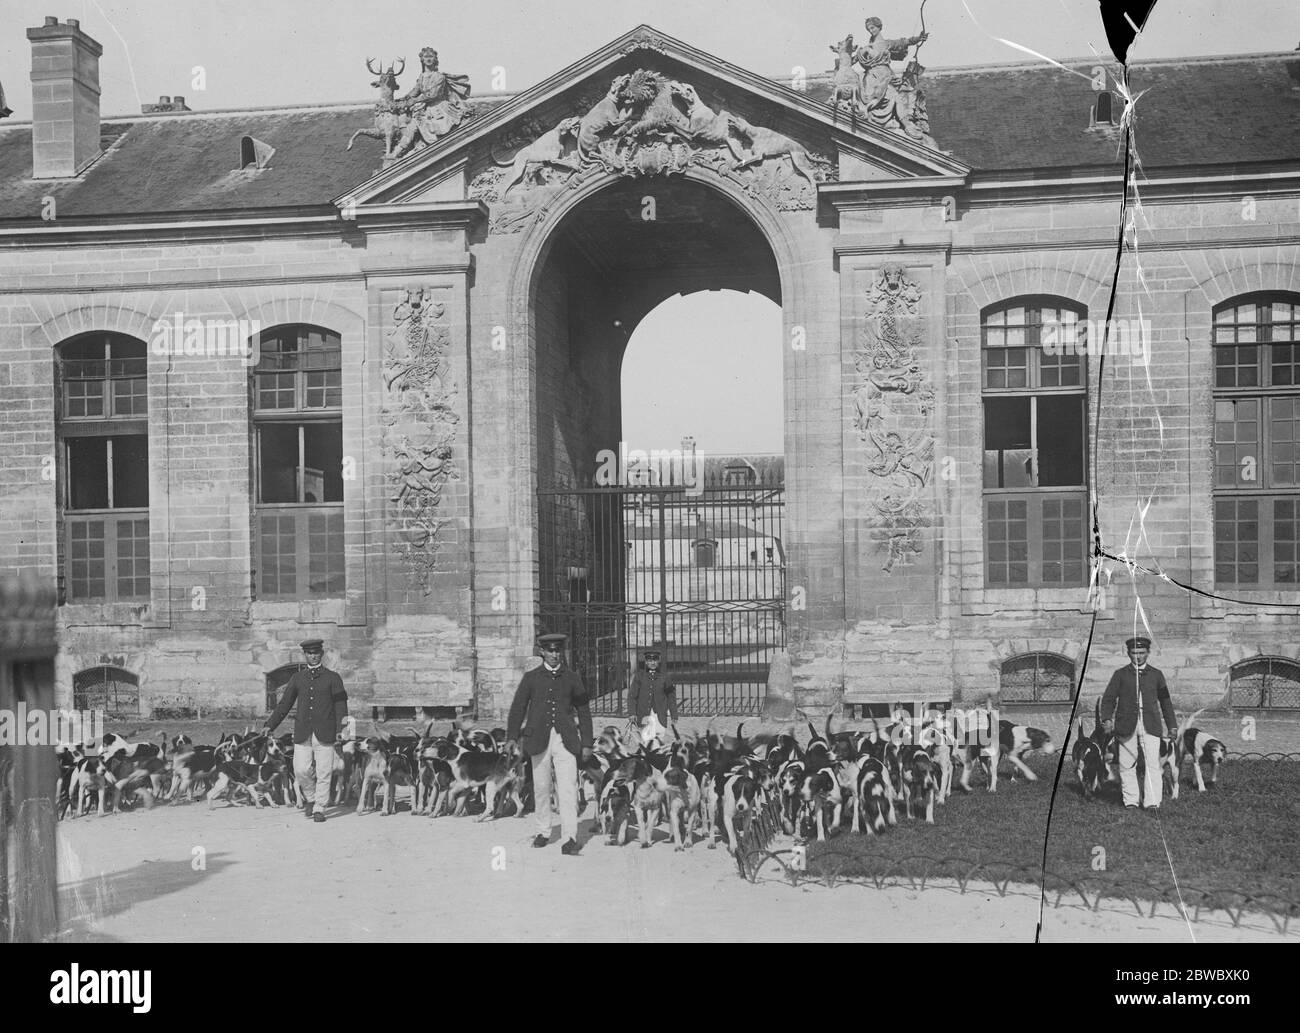 Training Hunde zu bellen und beißen. Ein neues Bild vom Schloss von Chantilly, wo der große Diamantenraub stattfand, zeigt einige der Hunde, die trainiert werden, um "Katzeneinbrecher" zu beißen und verdächtig aussehende Personen zu bellen. 22. Oktober 1926 Stockfoto